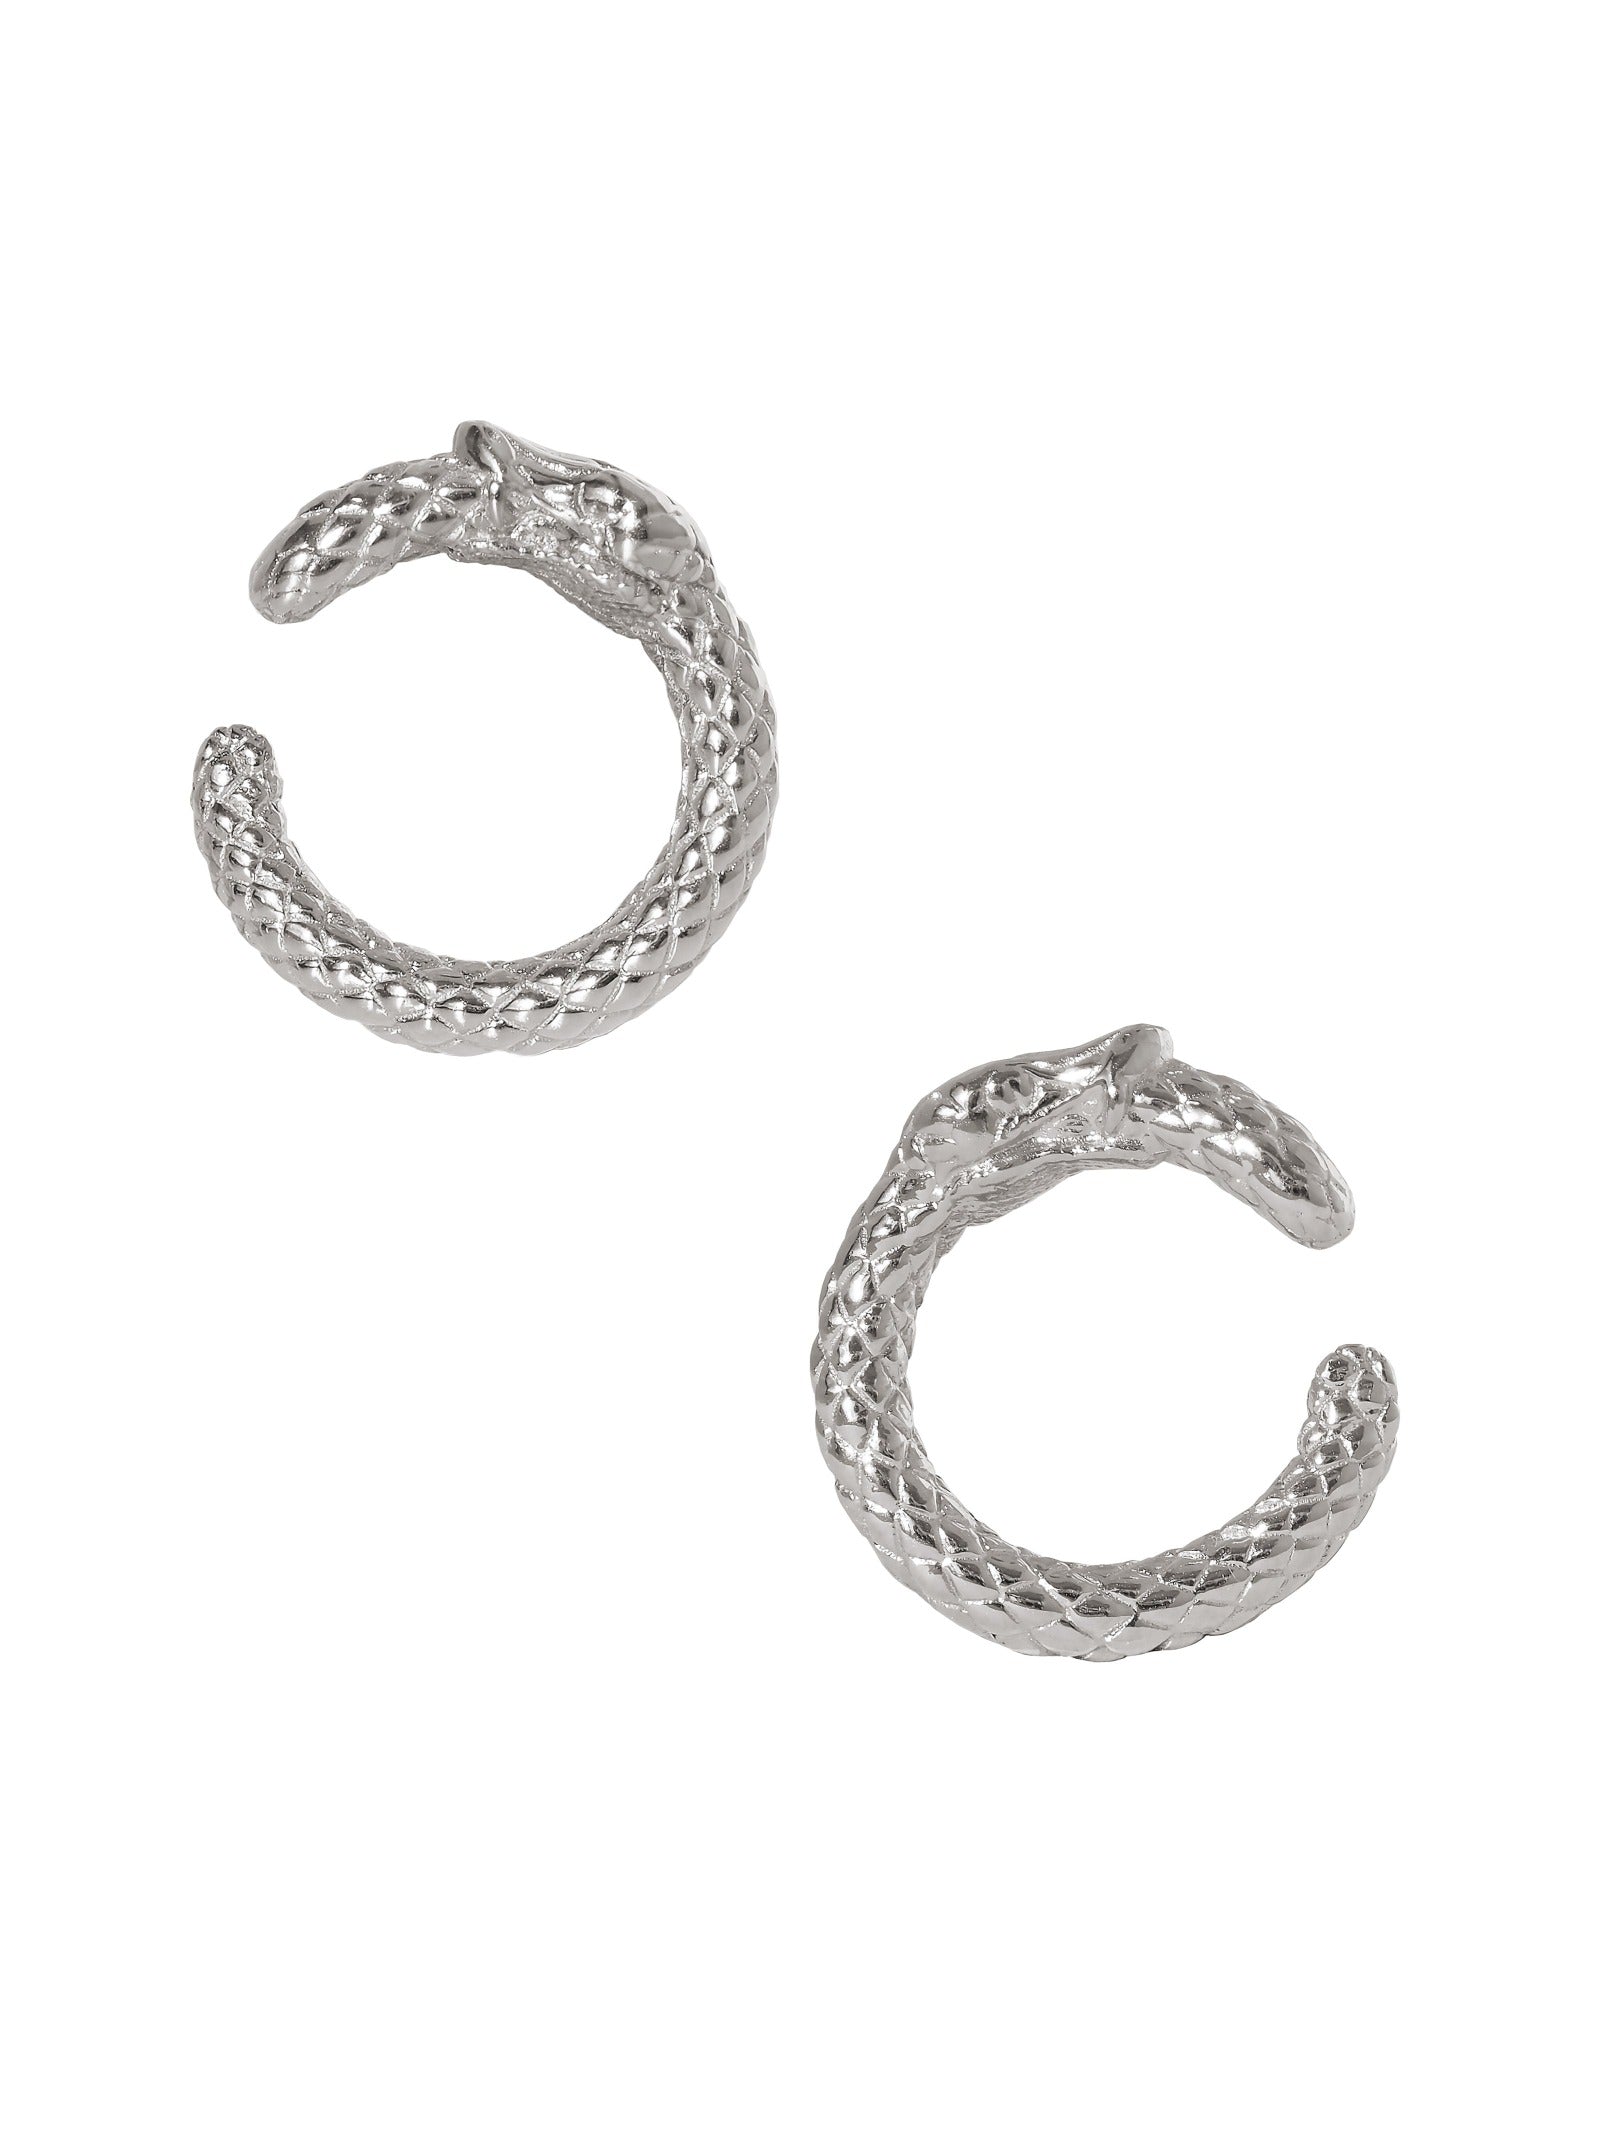 Ouroboros Hoop Earrings. 925 Sterling Silver